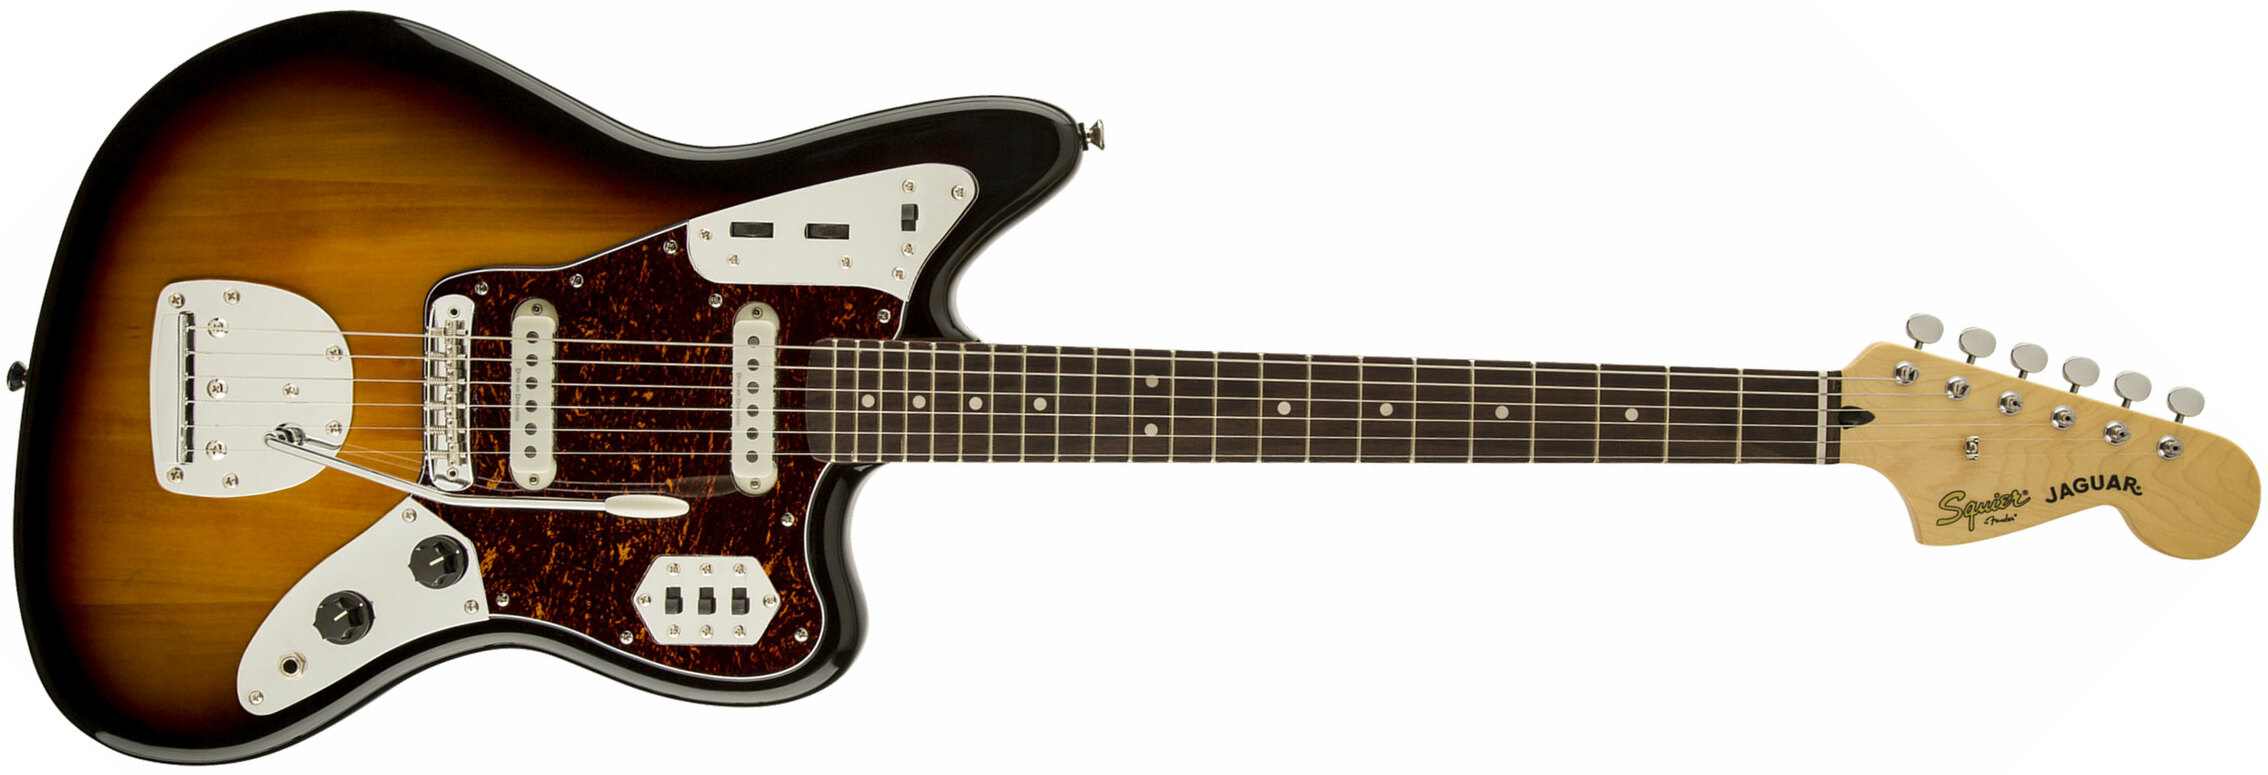 Squier Jaguar Classic Vibe 70s 2019 Lau - 3-color Sunburst - Retro rock electric guitar - Main picture